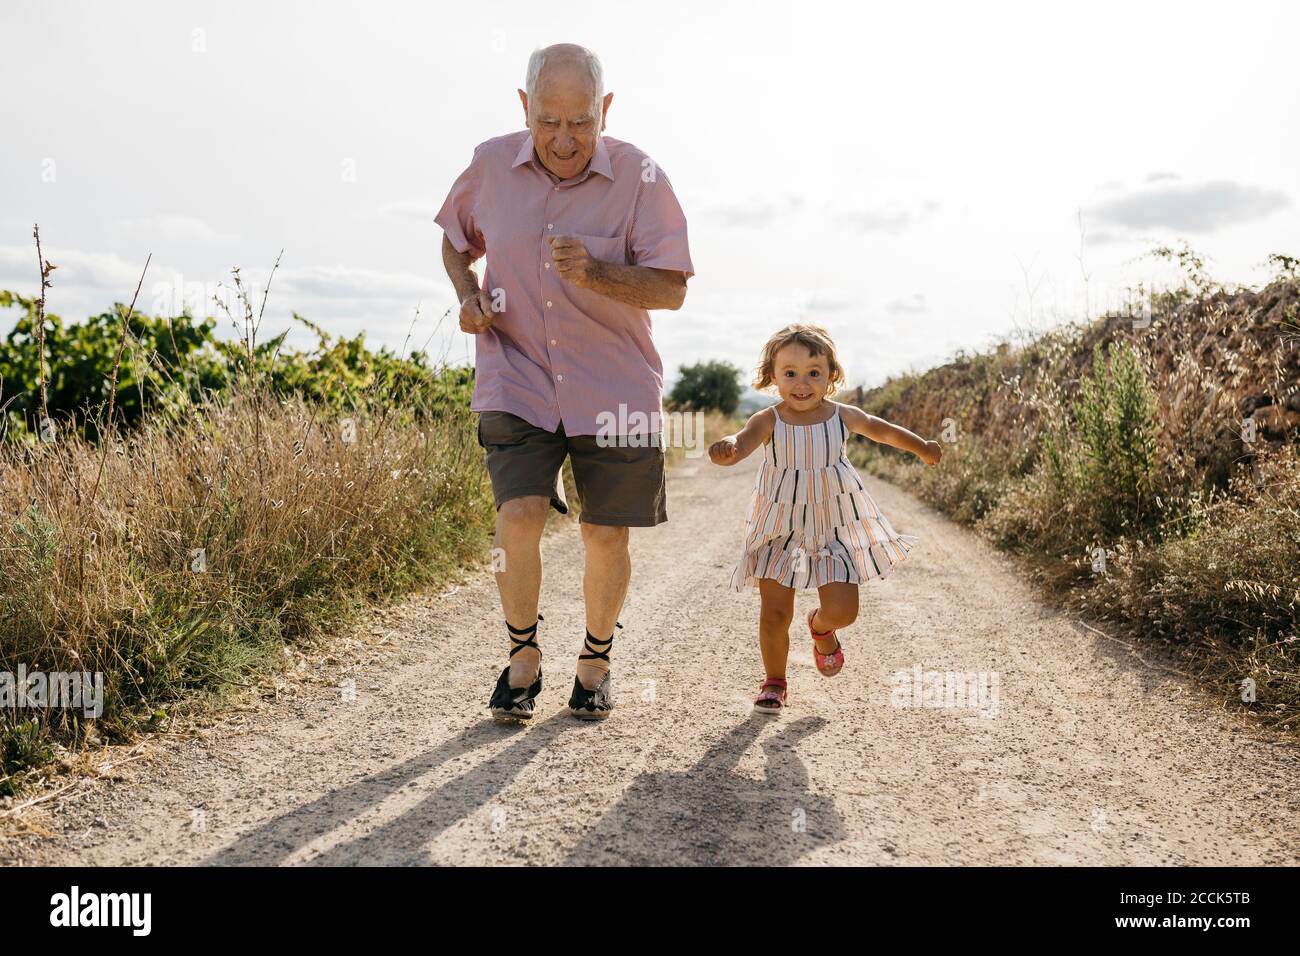 Un homme espiègle qui court avec sa petite-fille sur une route de terre au milieu plantes Banque D'Images